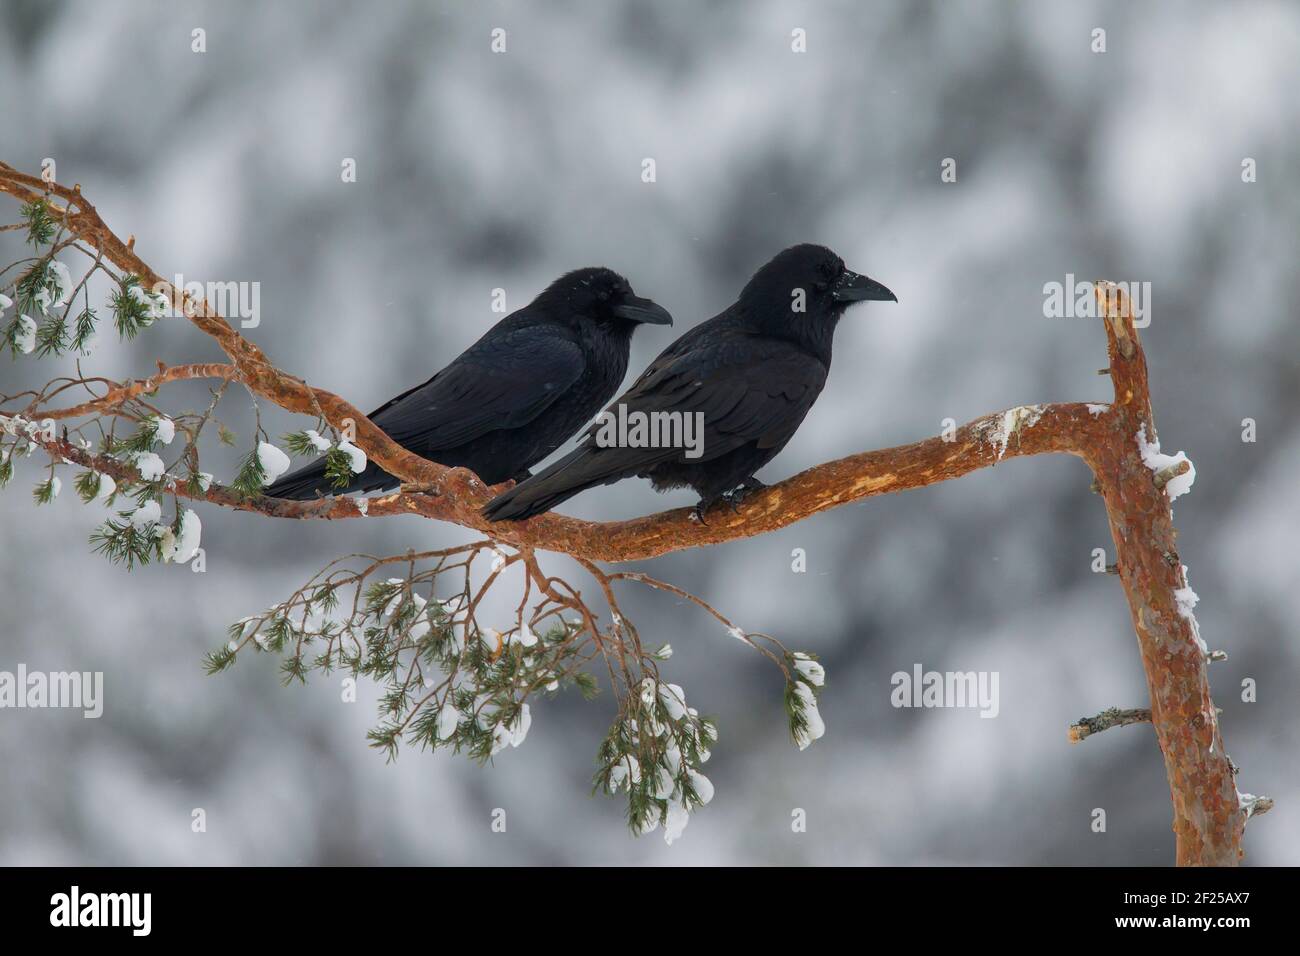 Cuervos comunes / cuervo del norte (Corvus corax) pareja encaramada en el árbol de picea en invierno Foto de stock